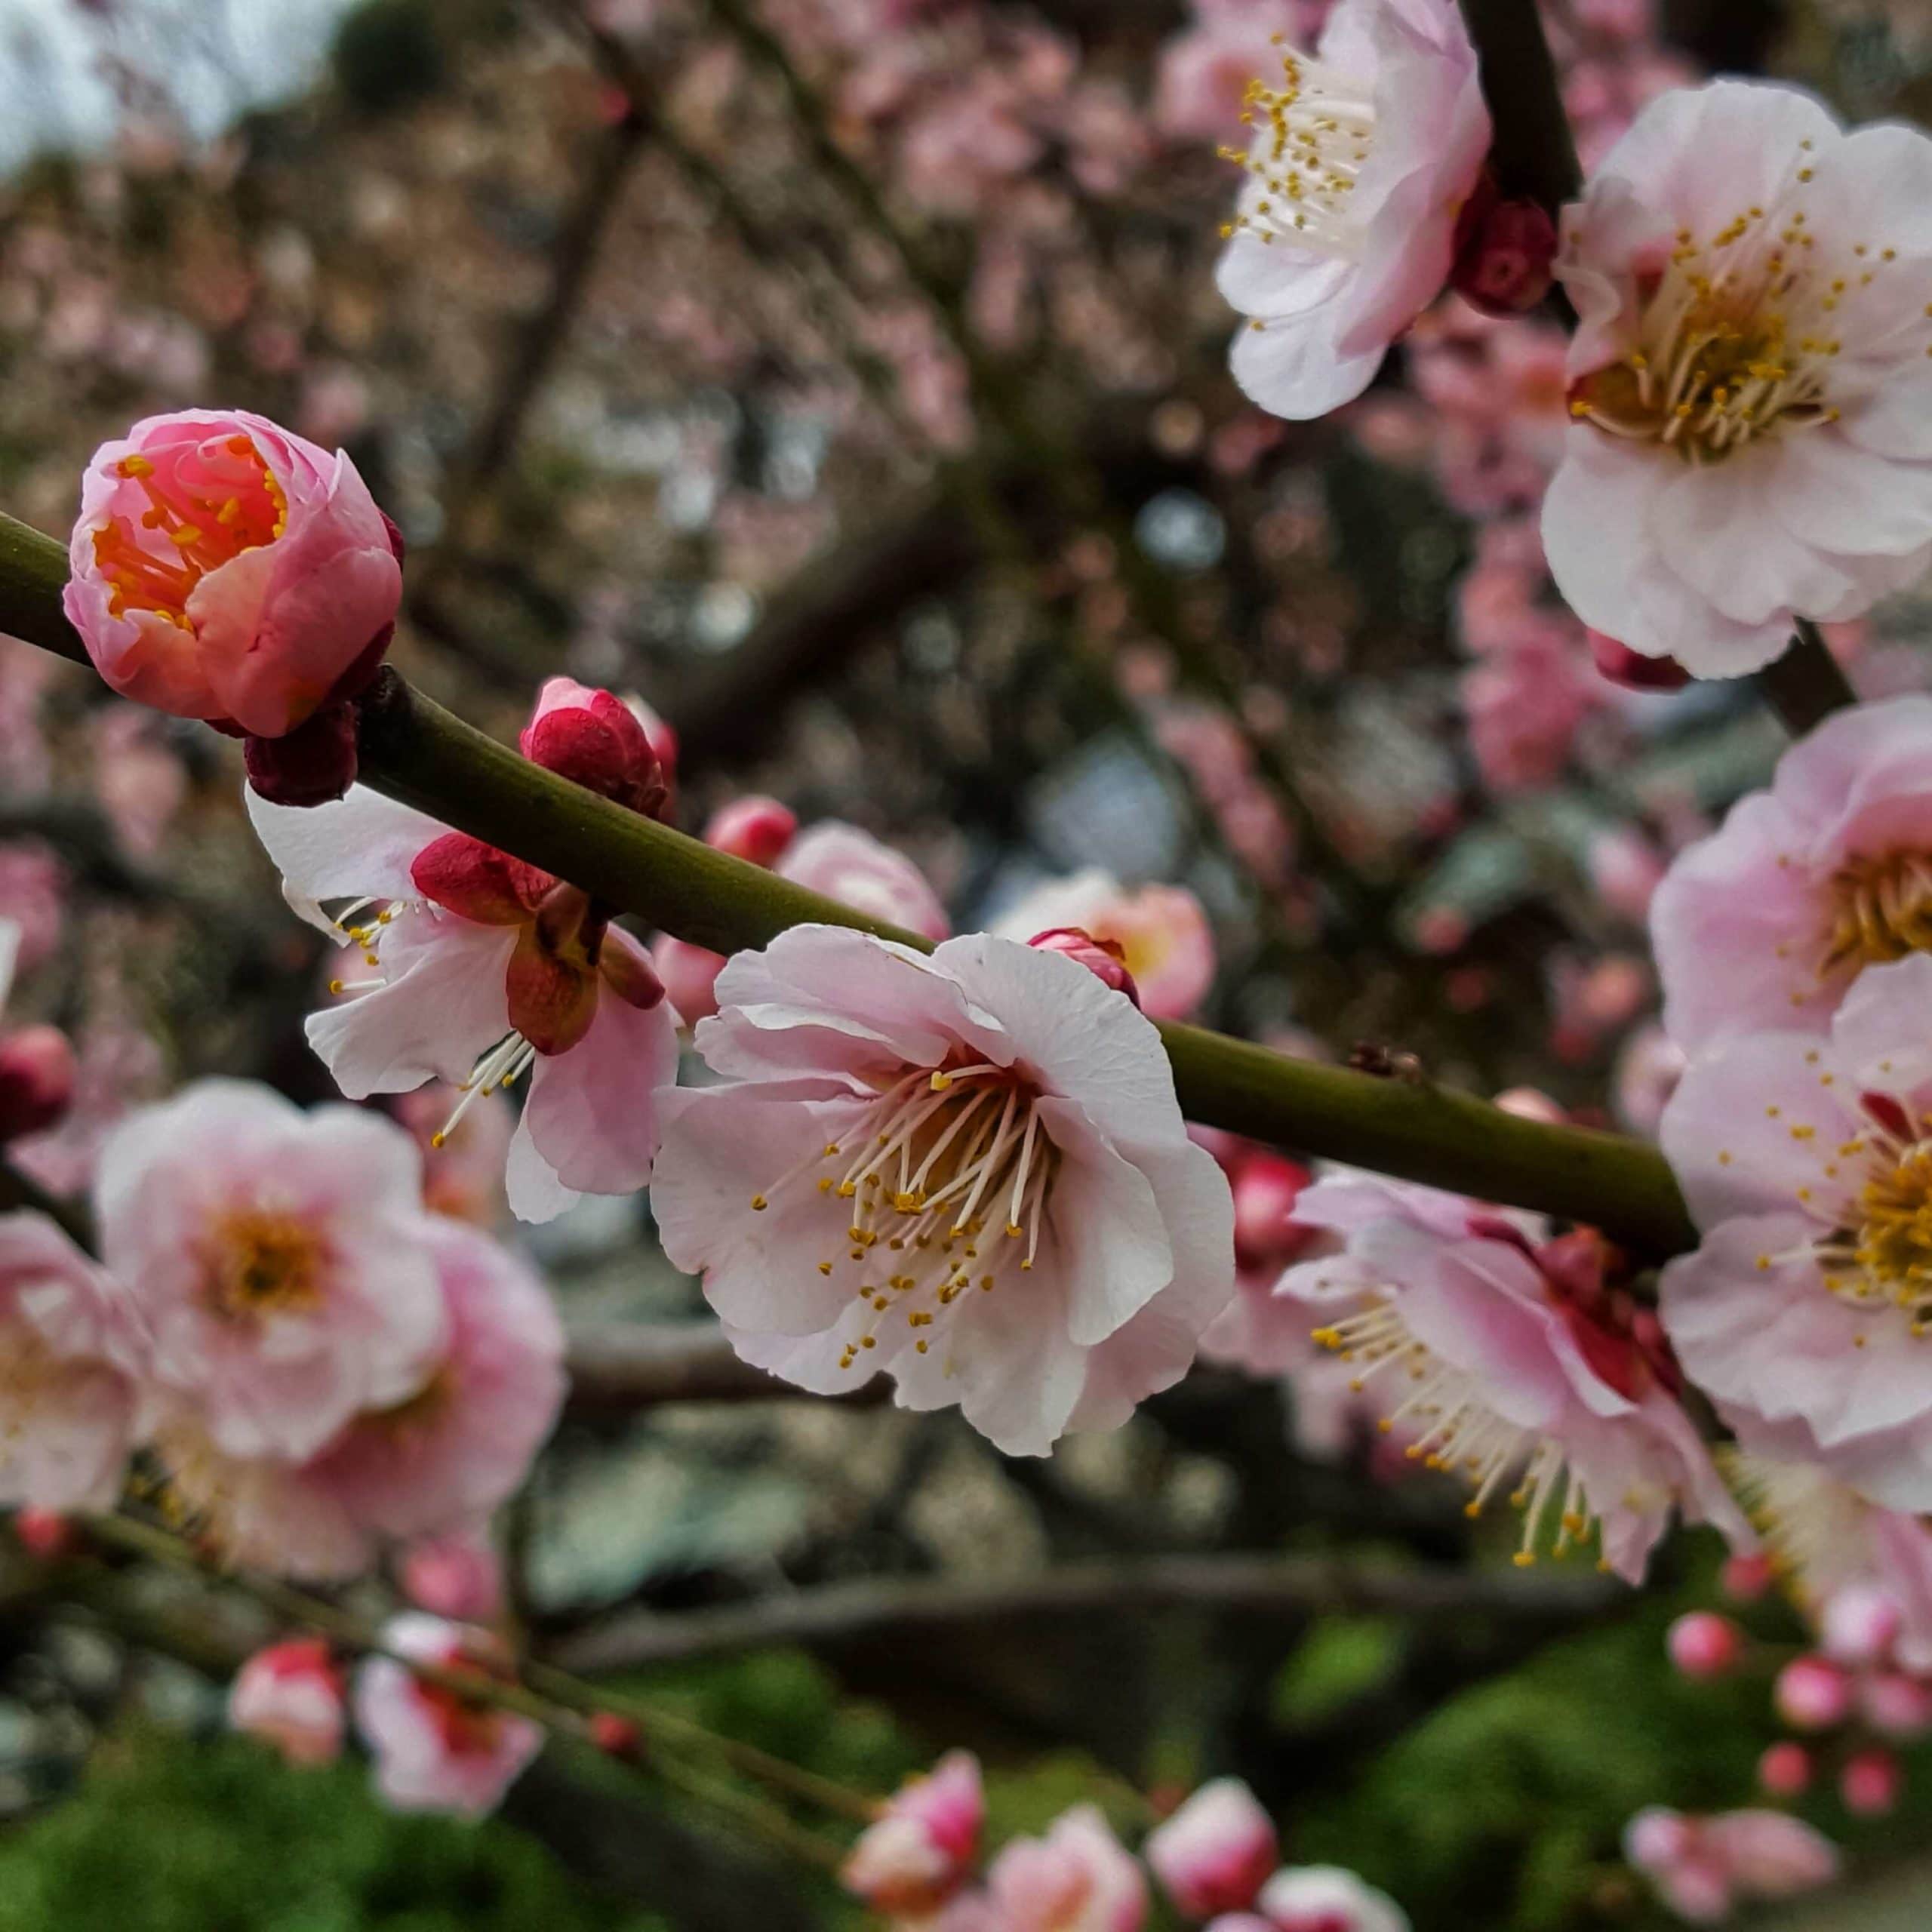 Sakura blossom in a park in Tokyo, Japan.